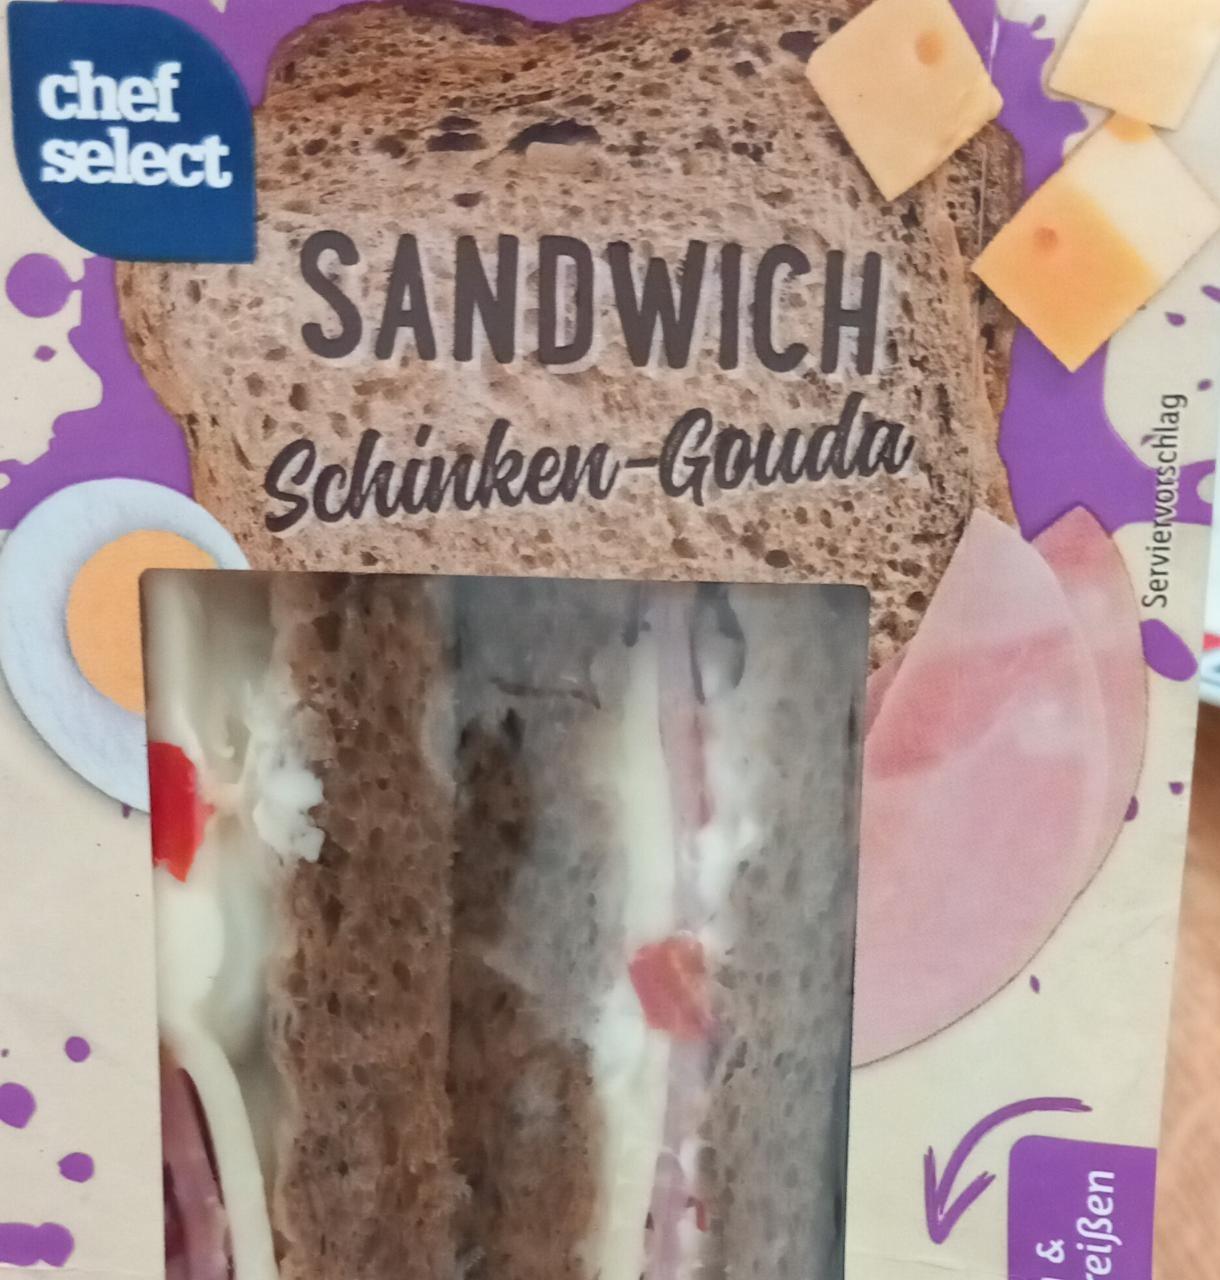 Sandwich Schinken-Gouda Chef Select kJ hodnoty nutriční kalorie, a 